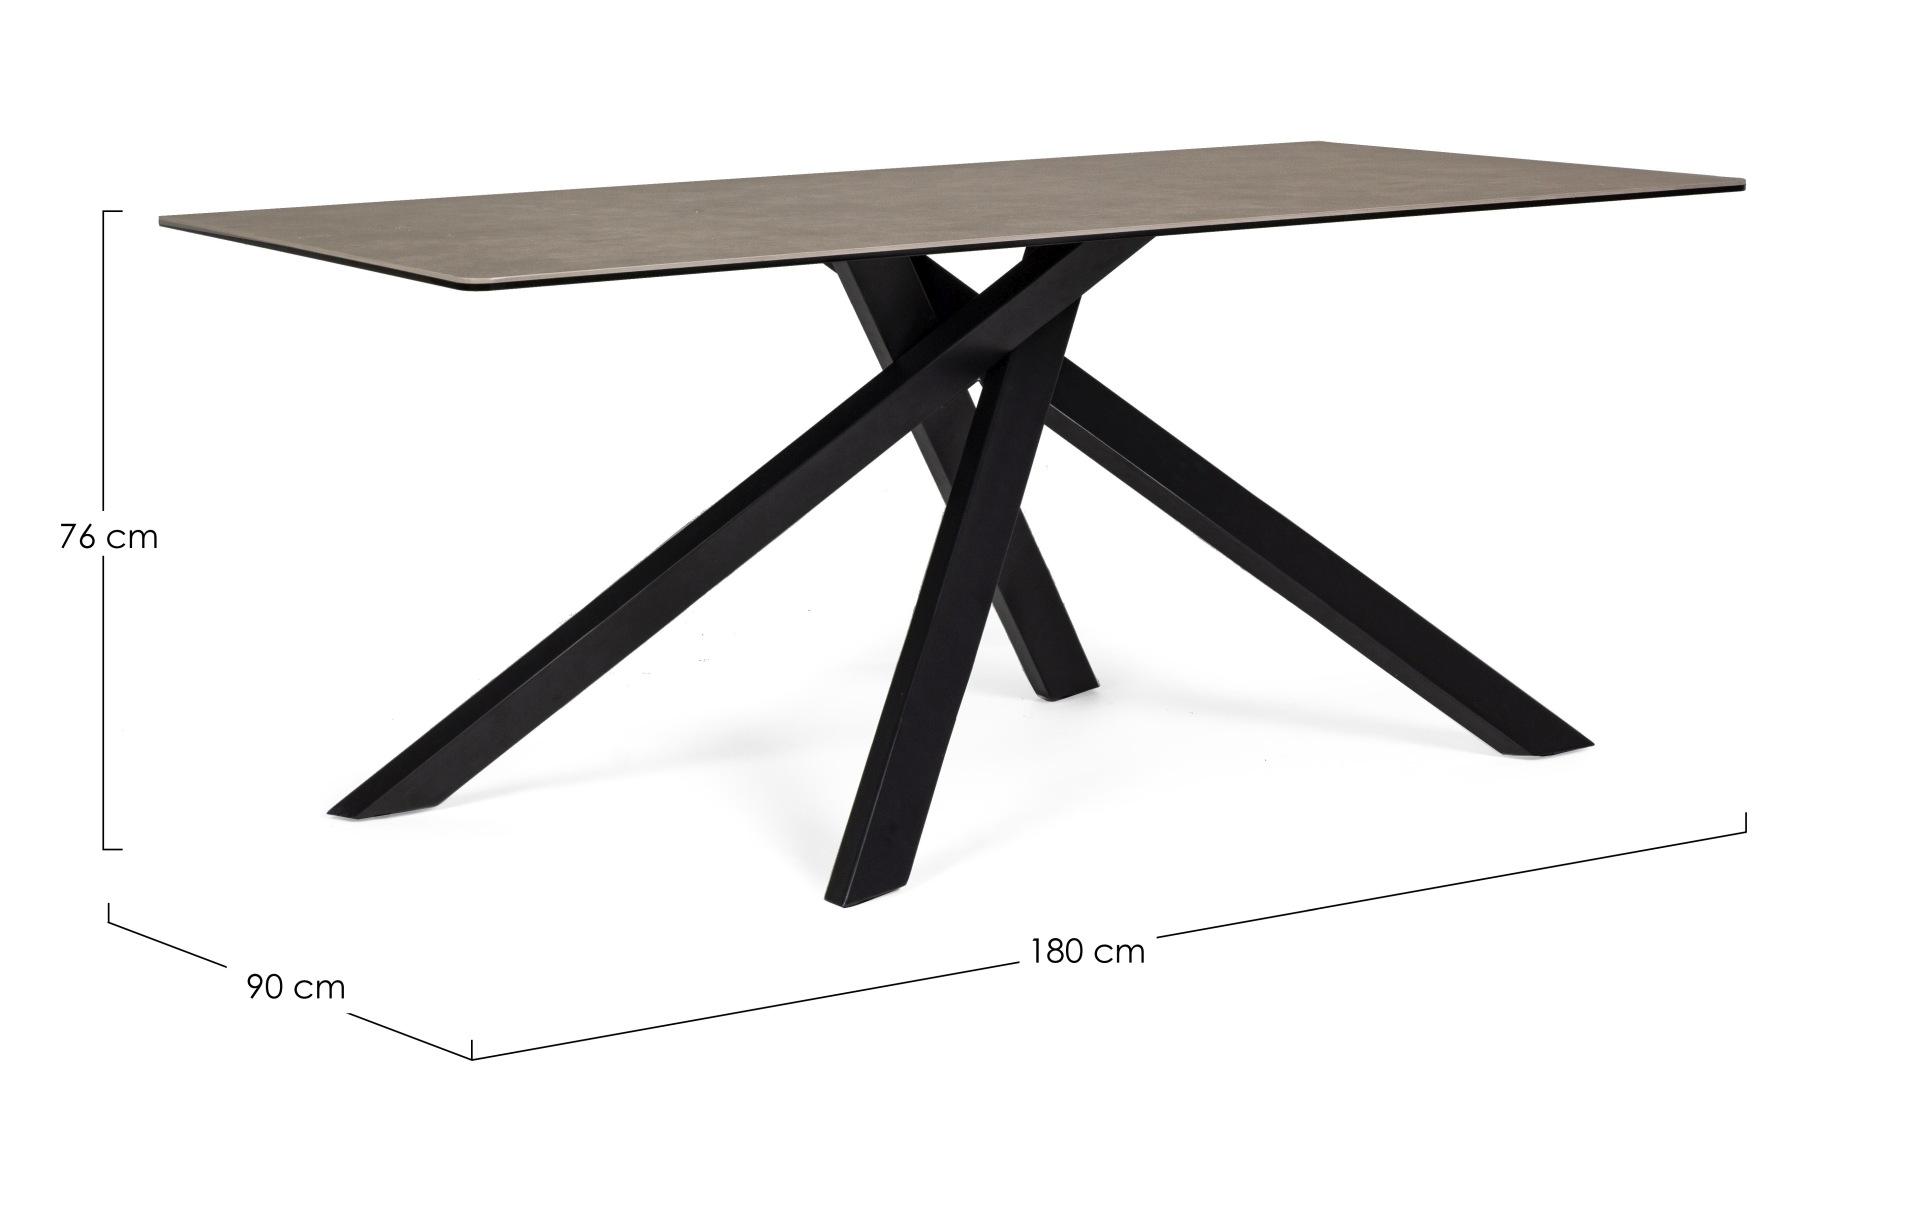 Der Esstisch Messier überzeugt mit seinem moderndem Design. Gefertigt wurde er aus Keramik, welches einen braunen Farbton besitzt. Das Gestell des Tisches ist aus Metall und ist in eine schwarze Farbe. Der Tisch besitzt eine Breite von 180 cm.